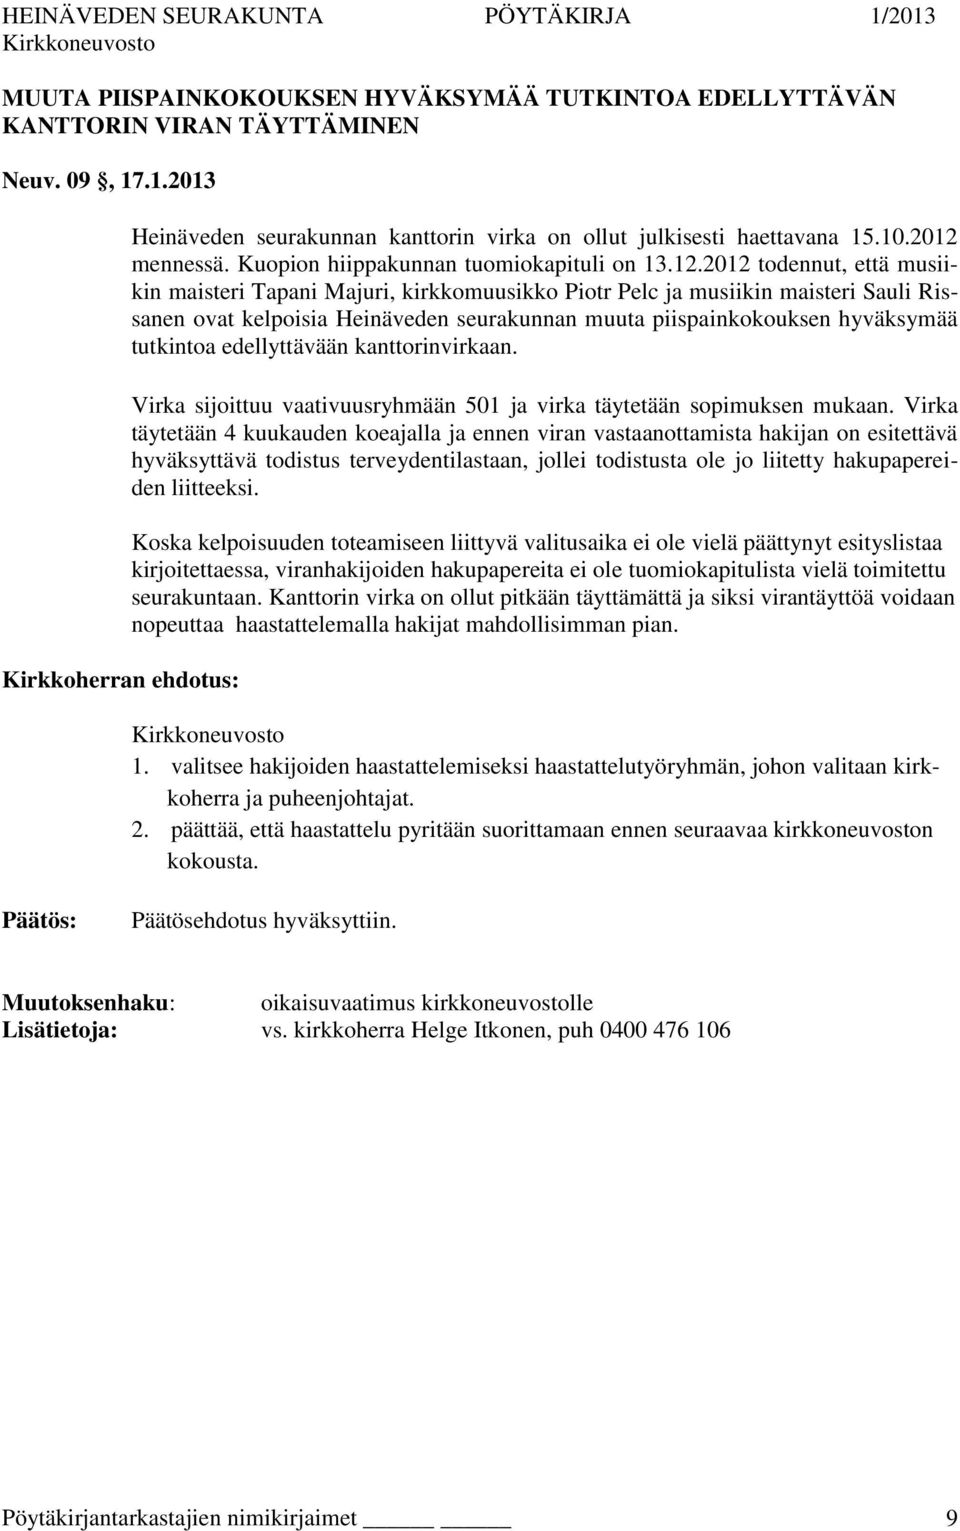 mennessä. Kuopion hiippakunnan tuomiokapituli on 13.12.